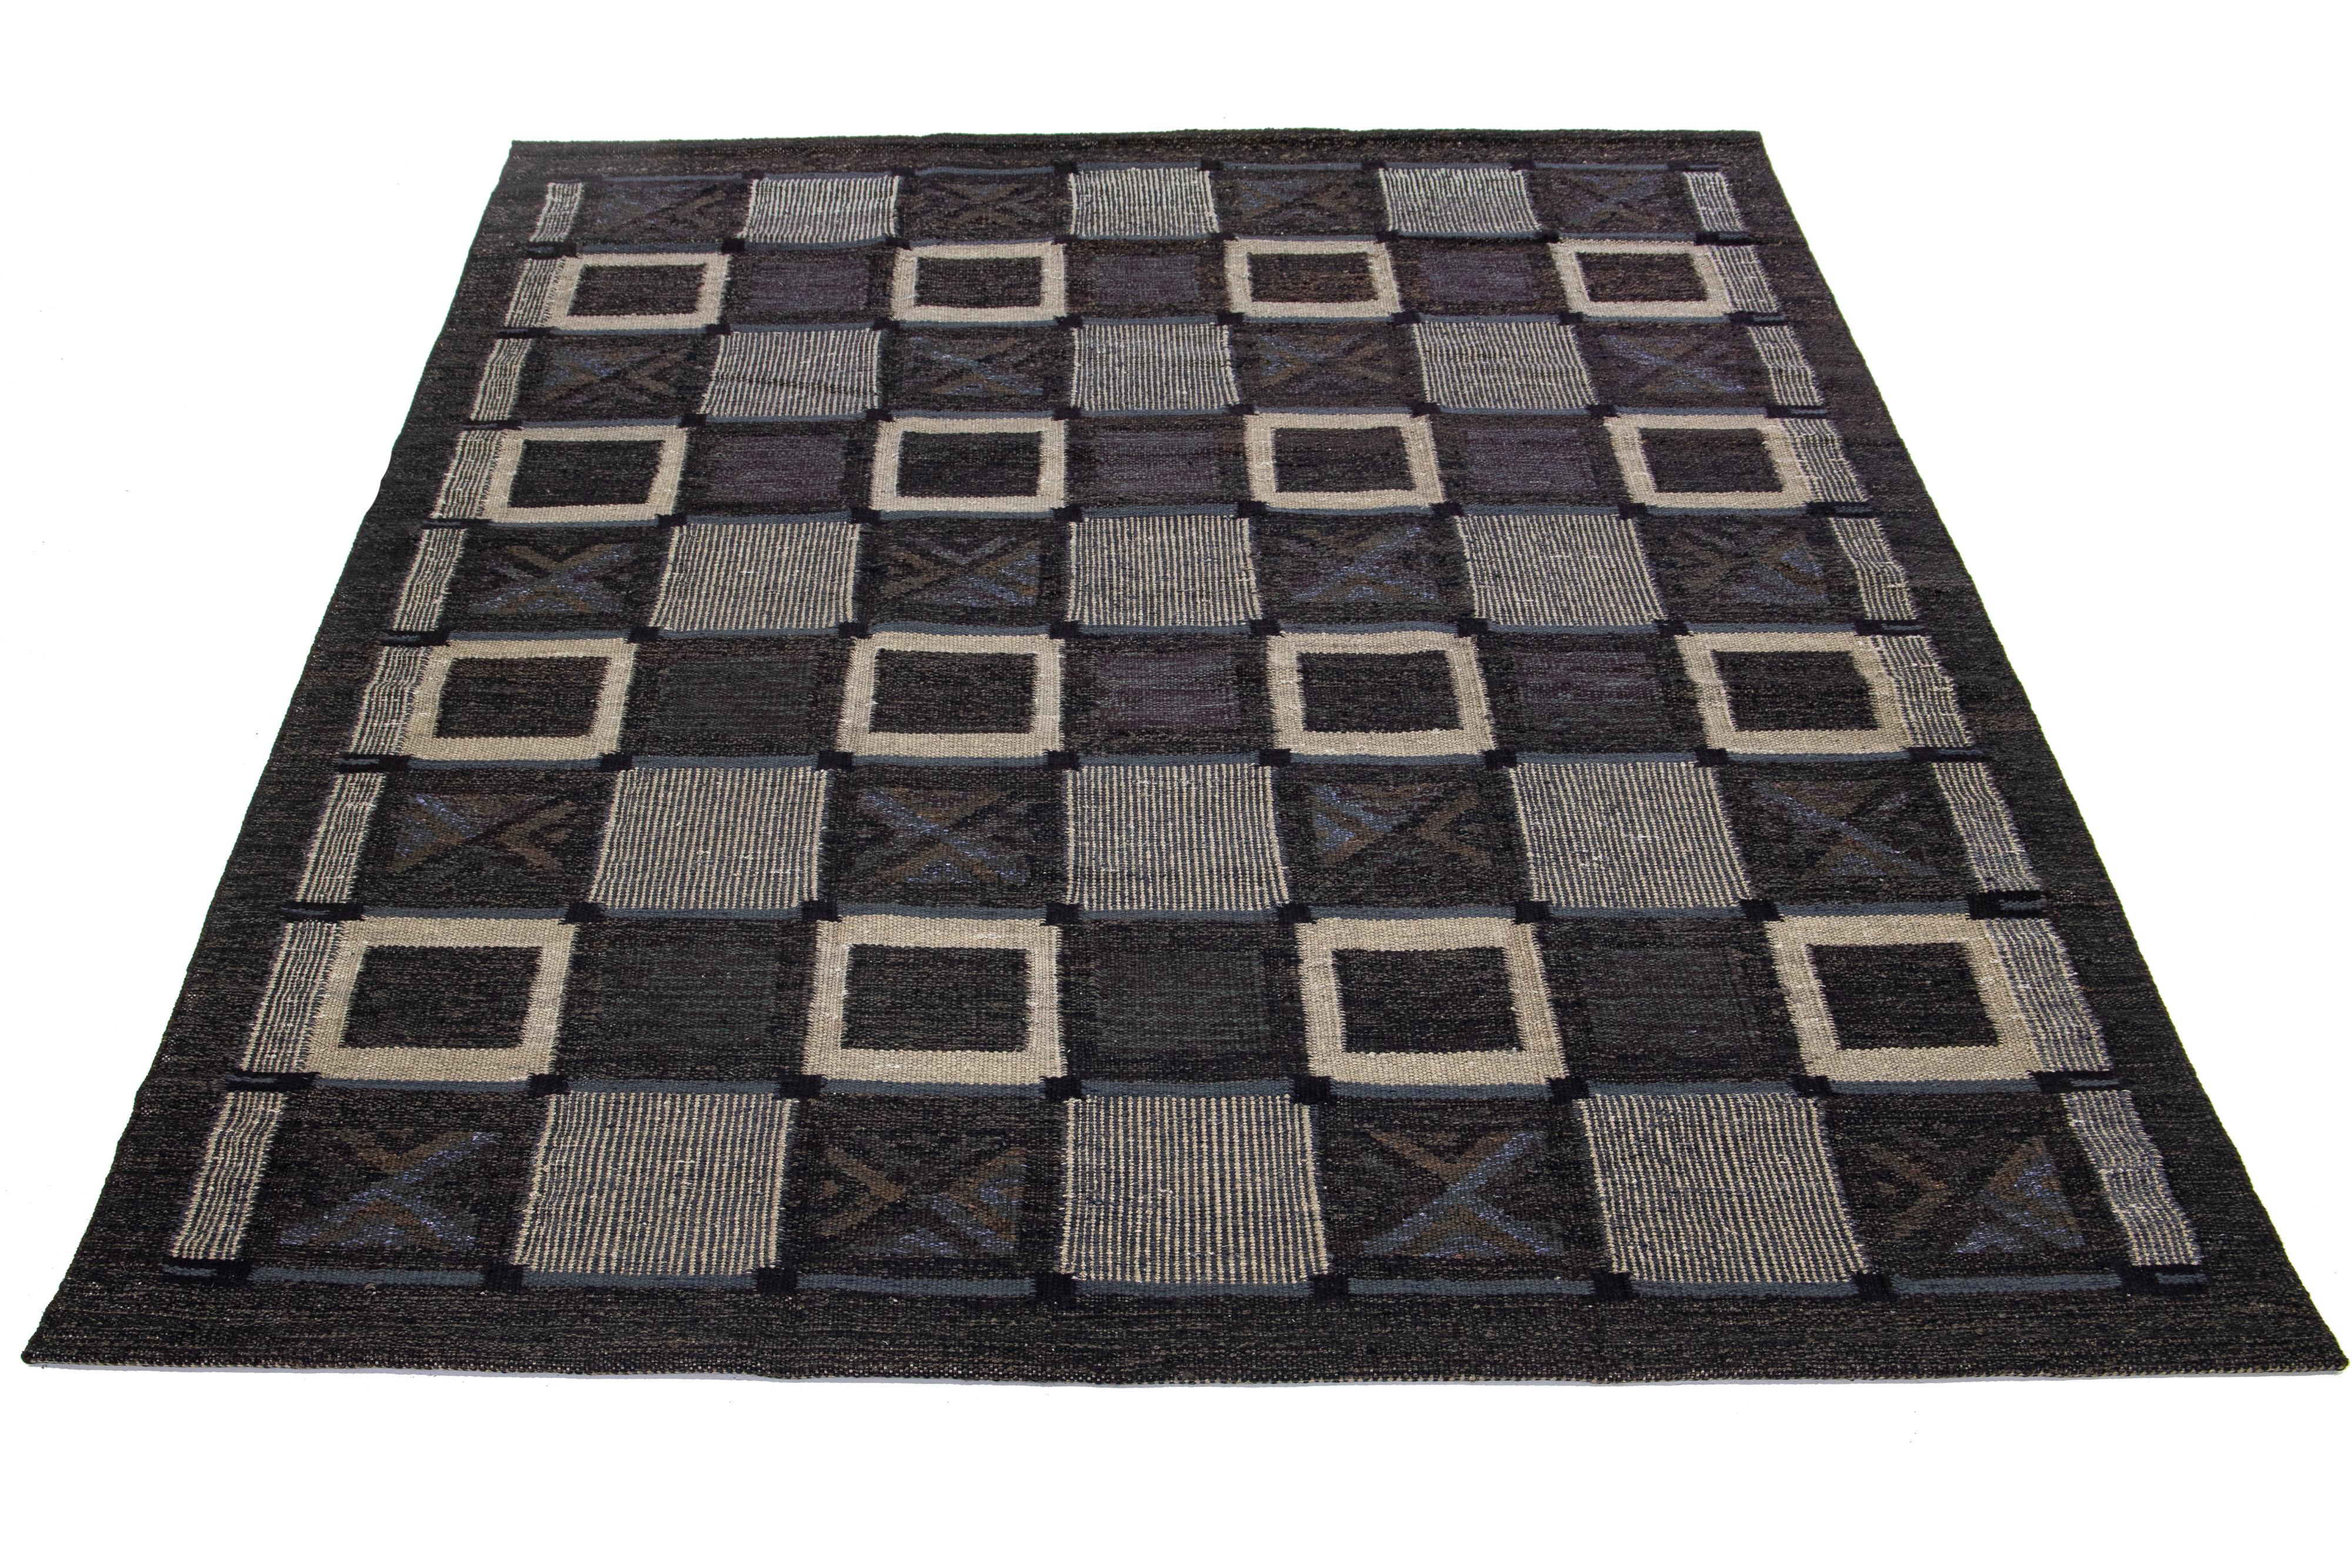 Dieser flachgewebte Teppich zeigt ein modernes schwedisches Design mit einem anthrazitfarbenen Untergrund. Ergänzt wird es durch grau-blaue, beige und braune geometrische Muster, die sich durch das gesamte Design ziehen.

 Dieser Teppich misst 8'10